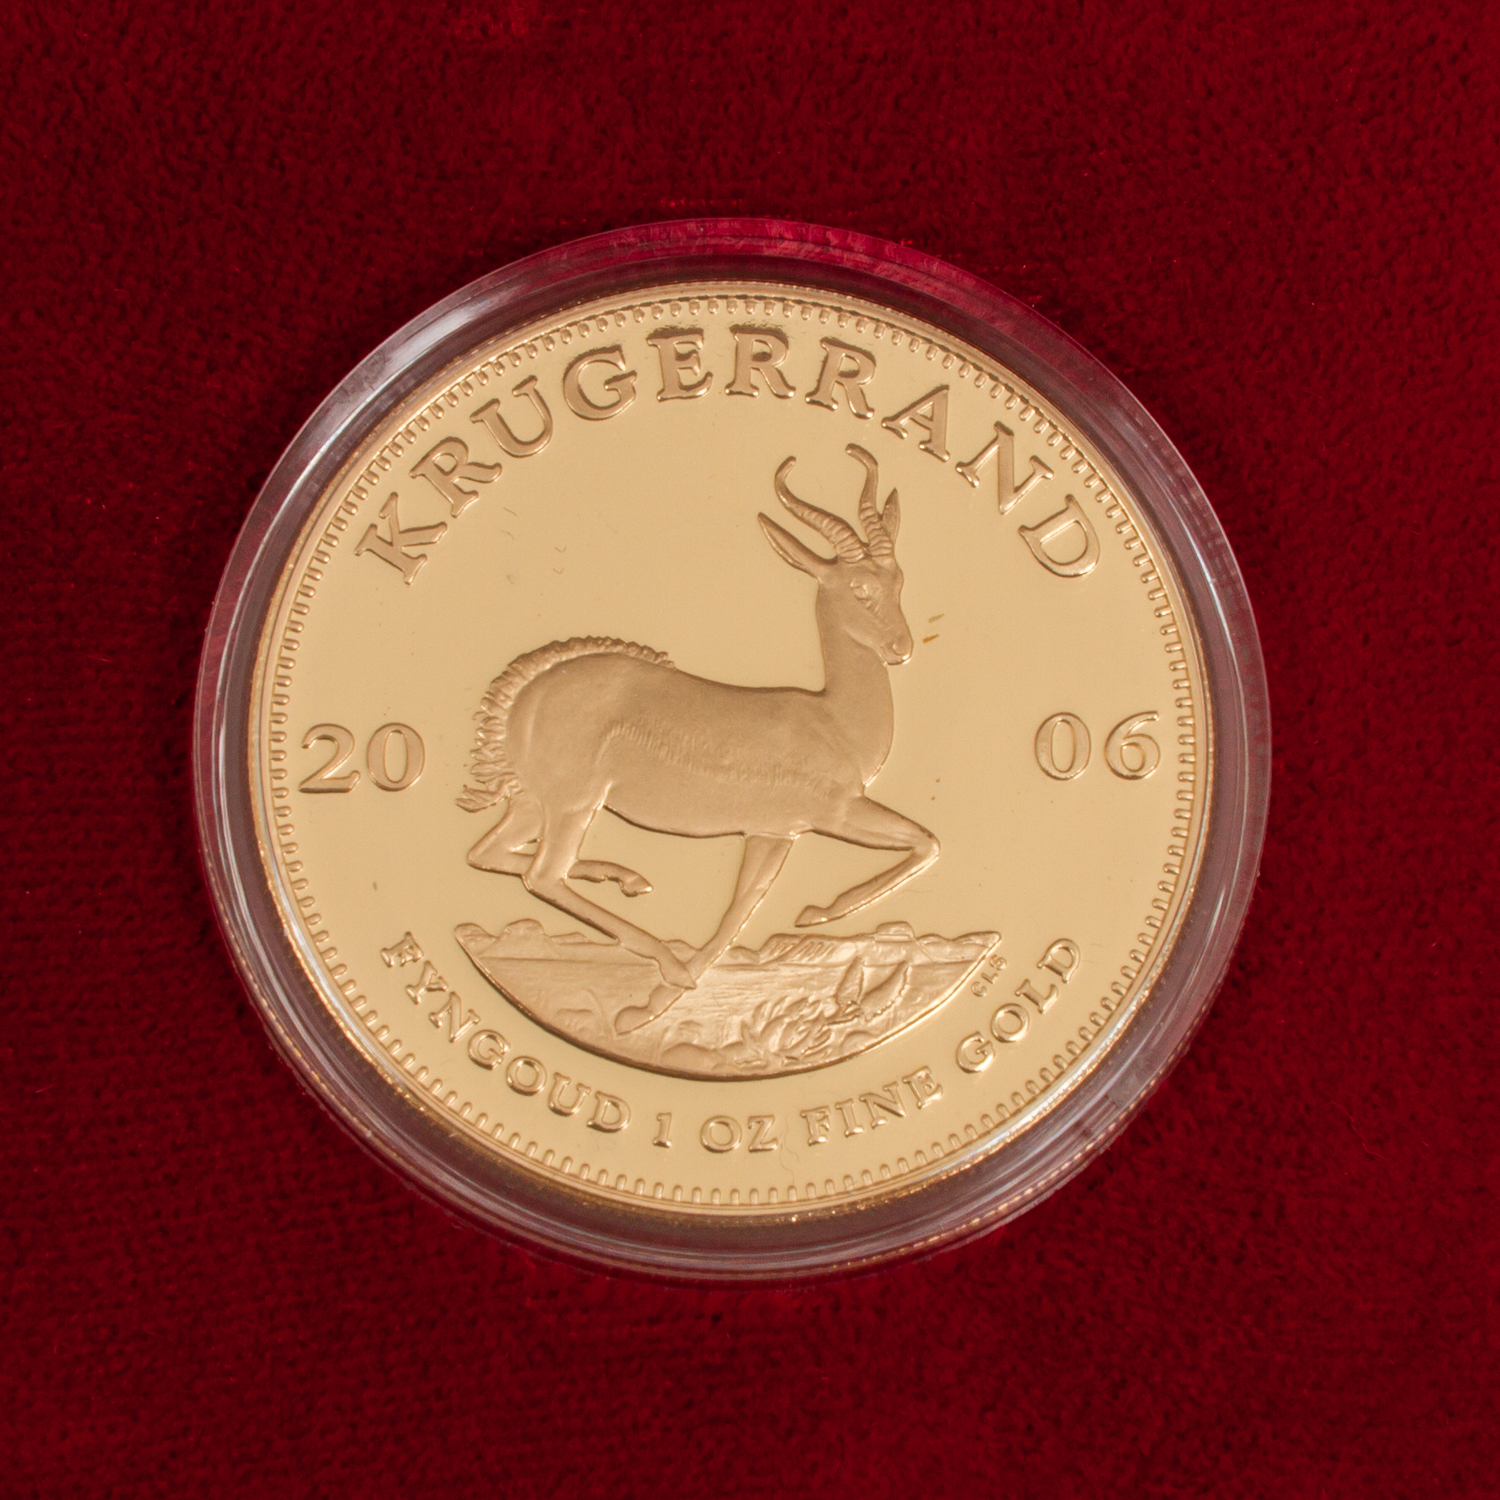 Südafrika/GOLD - 1 Unze GOLD fein, 1 Krügerrand 2006, SPIEGELGLANZ, Limited Edition, in Etui, - Image 2 of 3